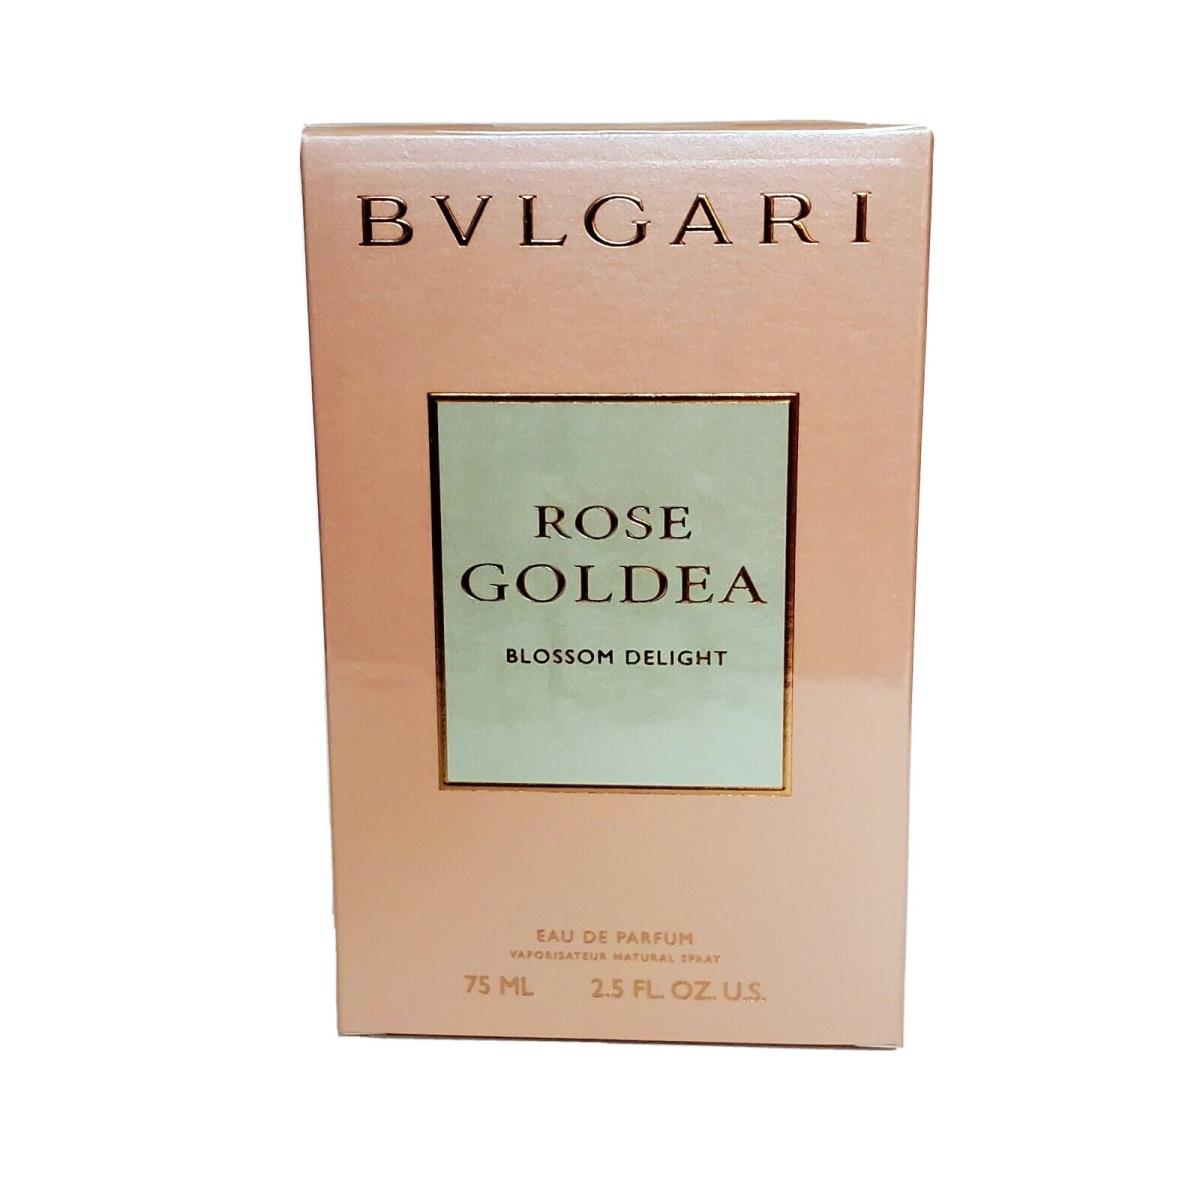 Bvlgari Rose Goldea Blossom Delight 2.5OZ Edp Spray For Women